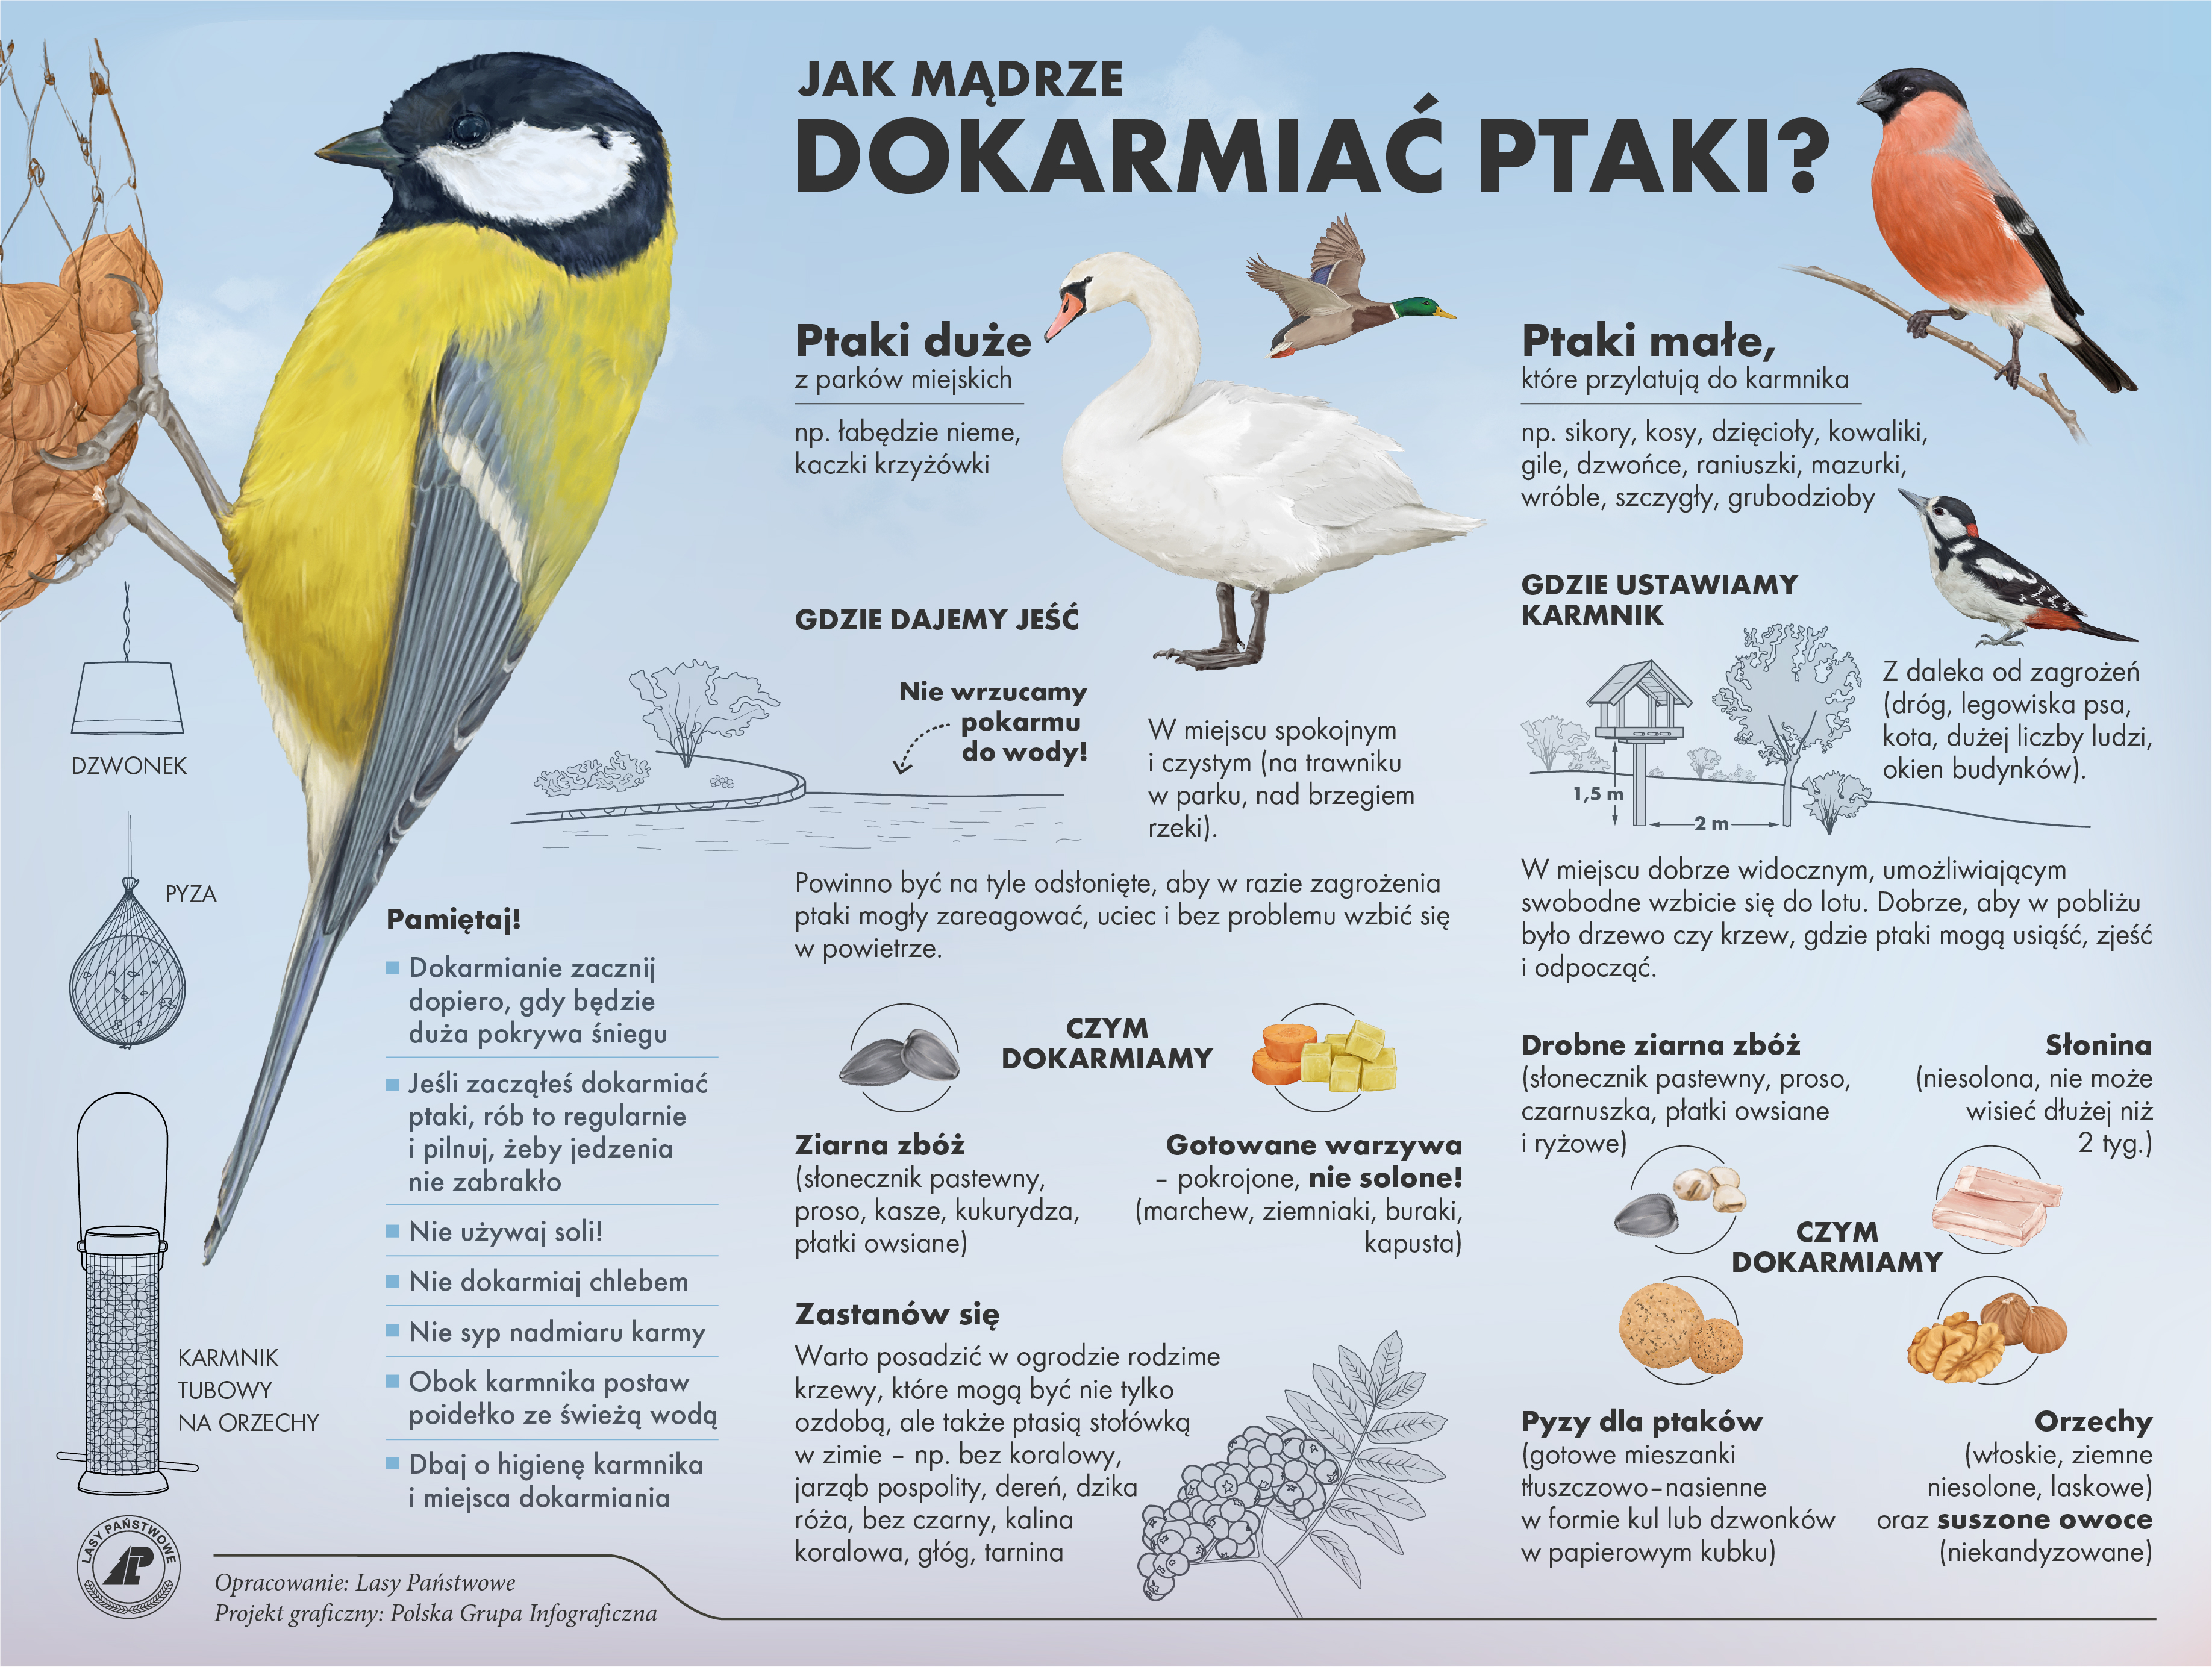 Zdjęcie przedstawia infografikę z informacjami dotyczącymi dokarmiania ptaków. Źródło Archiwum Lasów Państwowych.